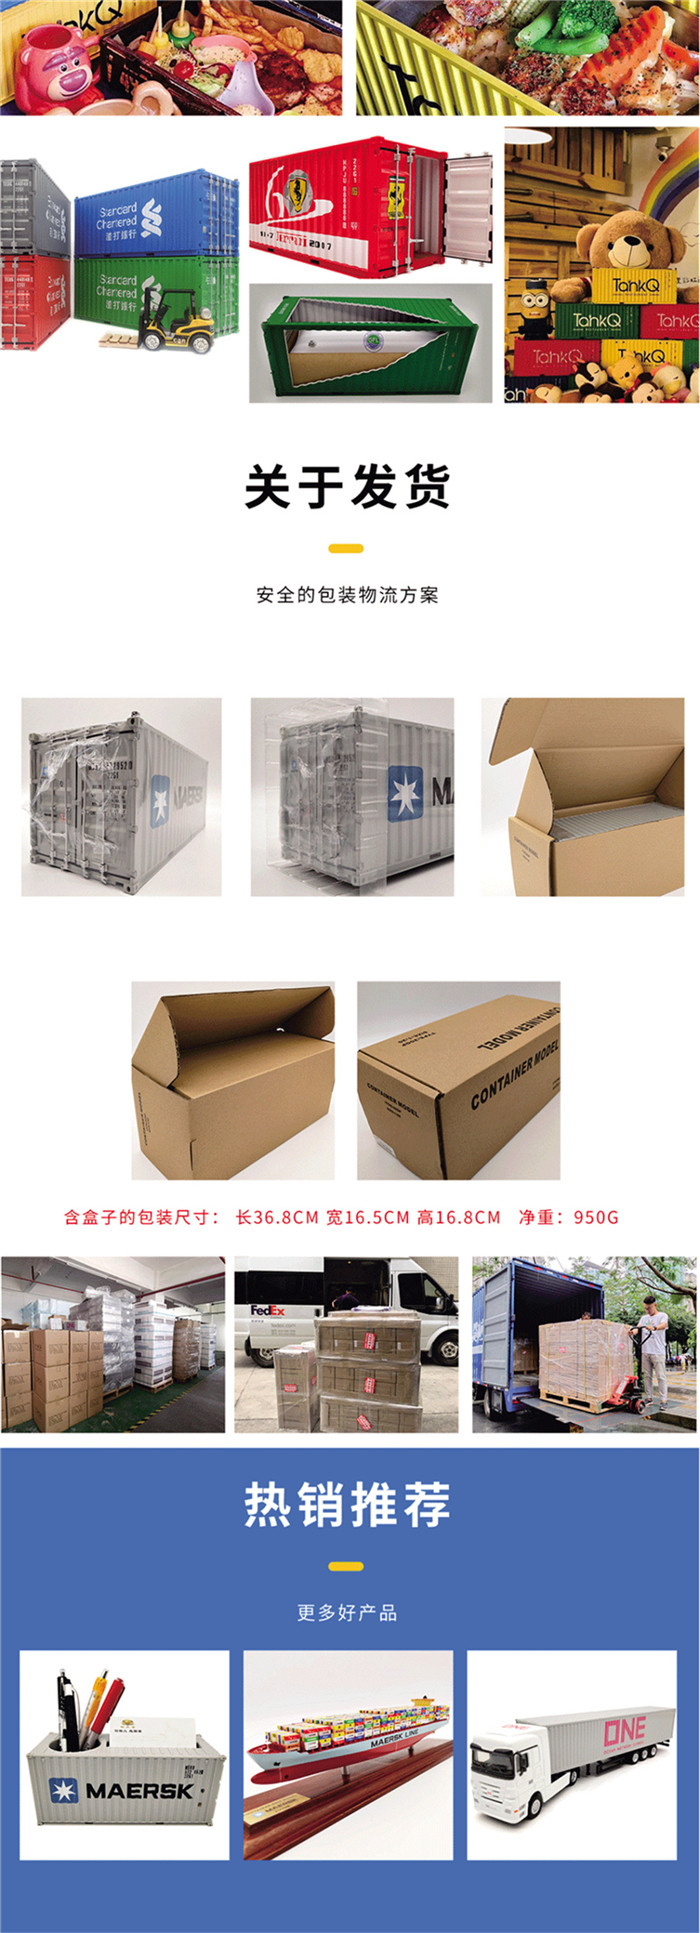 海艺坊液袋集装箱货柜模型工厂生产制作各种：物流液袋集装箱模型定制定做,物流液袋货柜模型订制订做,物流液袋集装箱模型  。